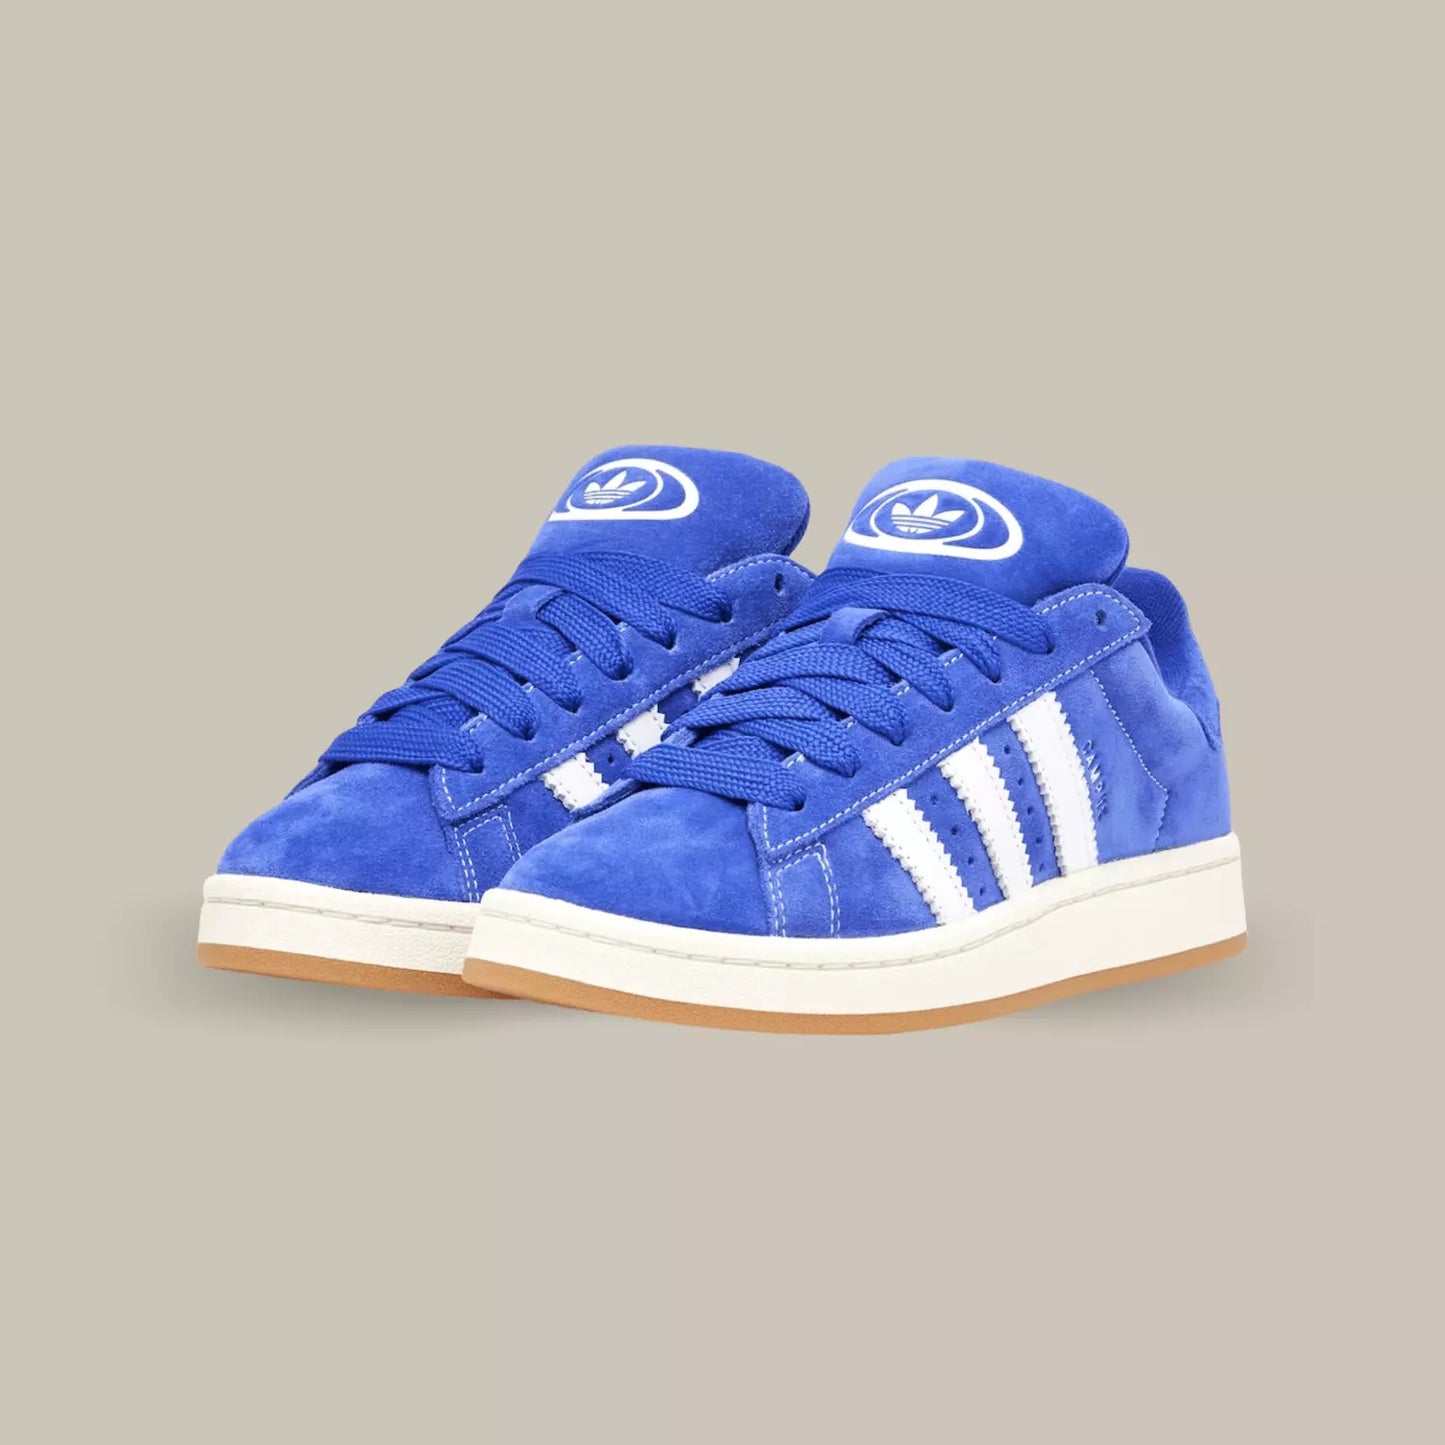 La Adidas Campus 00s Lucid Blue possède une base en cuir bleu avec les trois célèbres bandes blanches. On découvre une semelle jaunie pour accentuer l’effet vintage de la paire et une outsole en gomme.